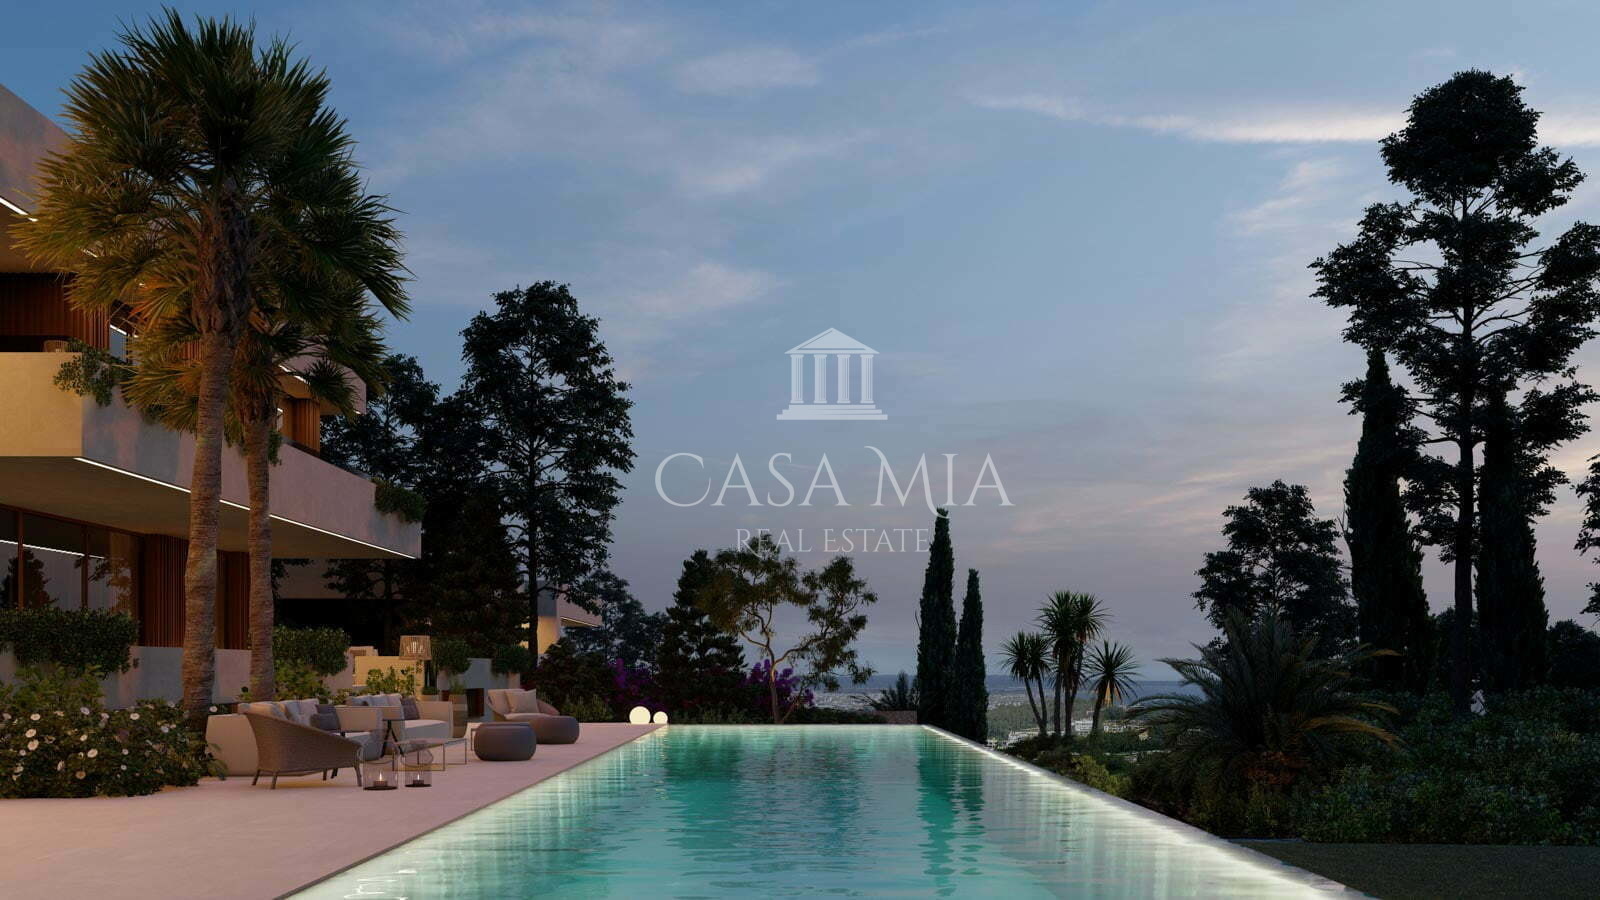 Terrain pour projet de villa de luxe haut de gamme avec vue sur la mer, Son Vida